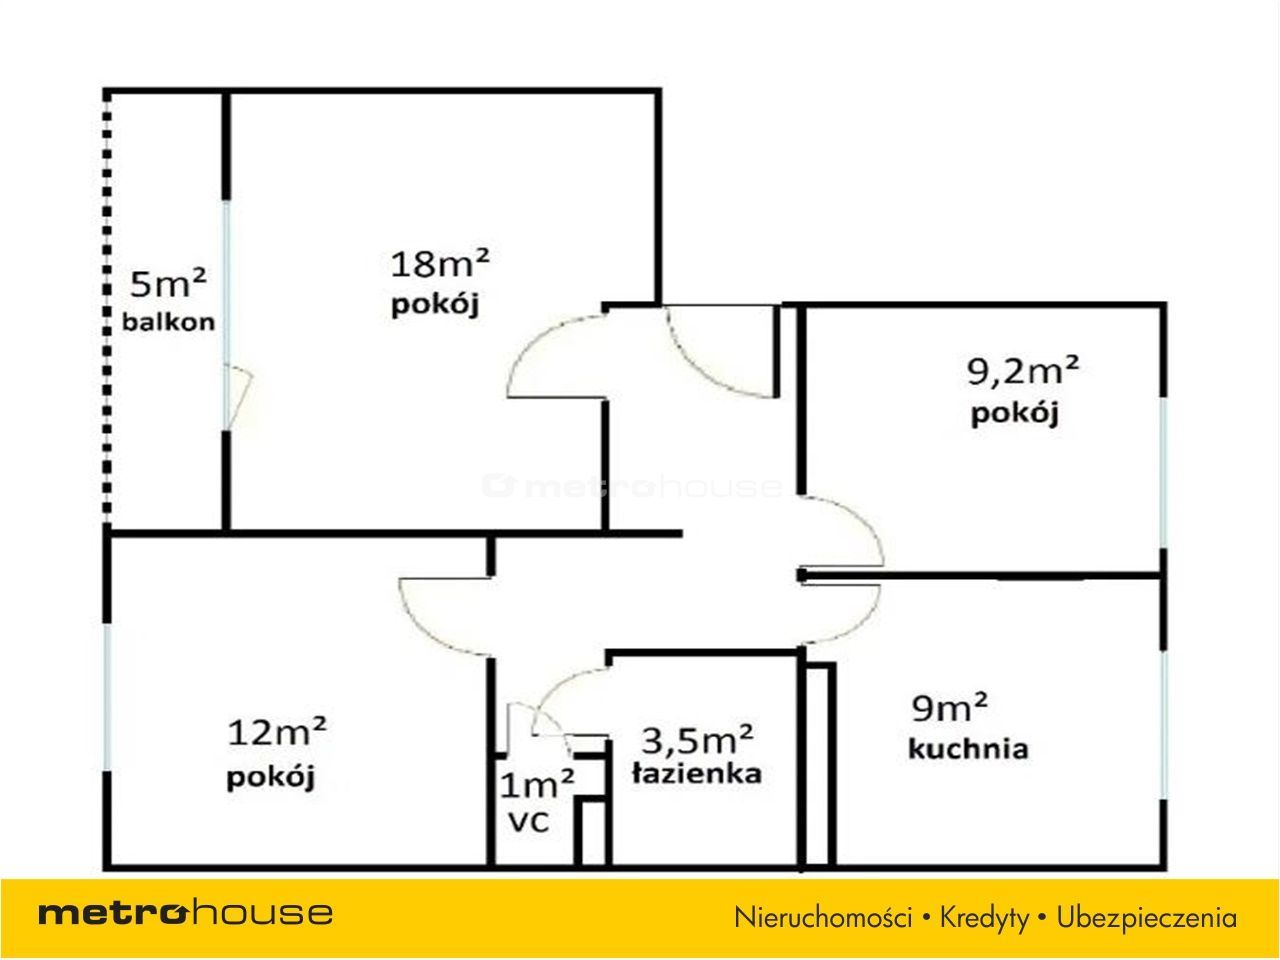 Mieszkanie na sprzedaż, Buszkowy Górne, 3 pokoje, 63,7 mkw, za 370000 zł: zdjęcie 92879699